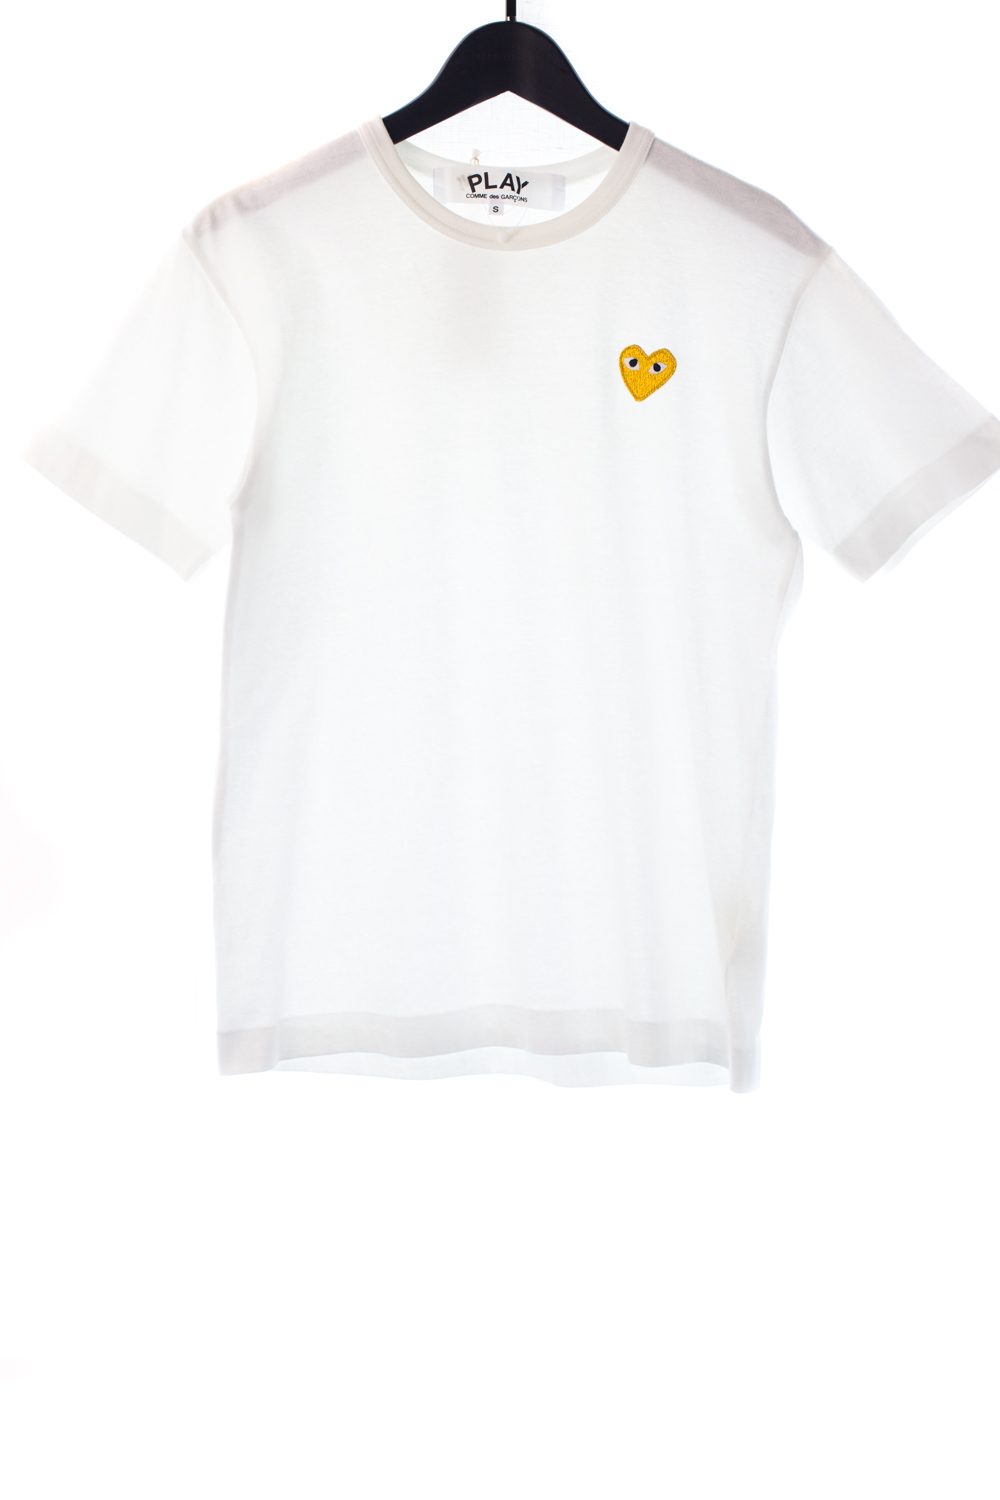 “Play” Gold Heart Shirt